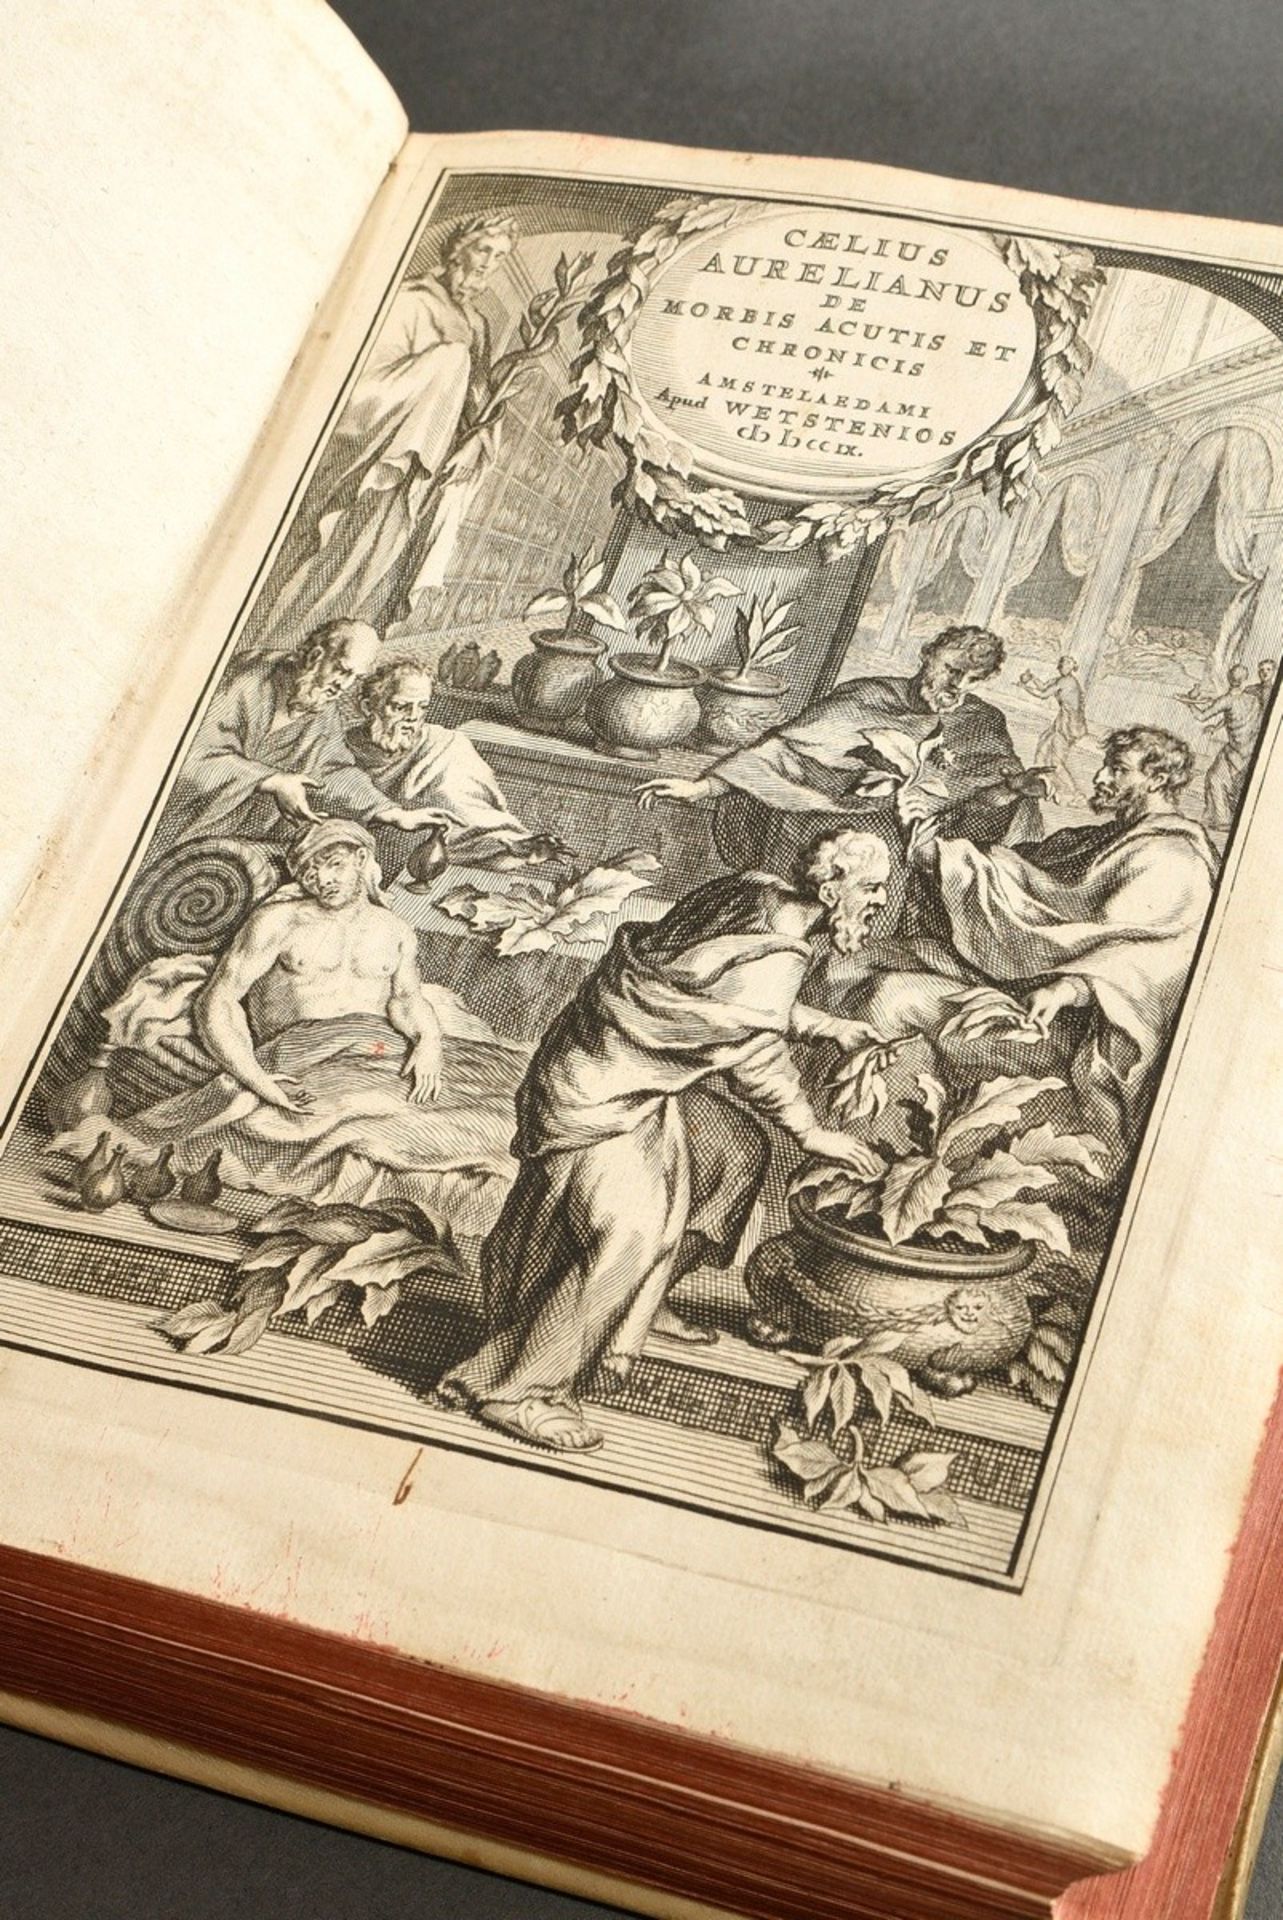 Band "Caelius Aurelianus de Morbis Acutis et Chronicis", Amsterdam 1709, Kupferstich als Frontispiz - Bild 2 aus 8